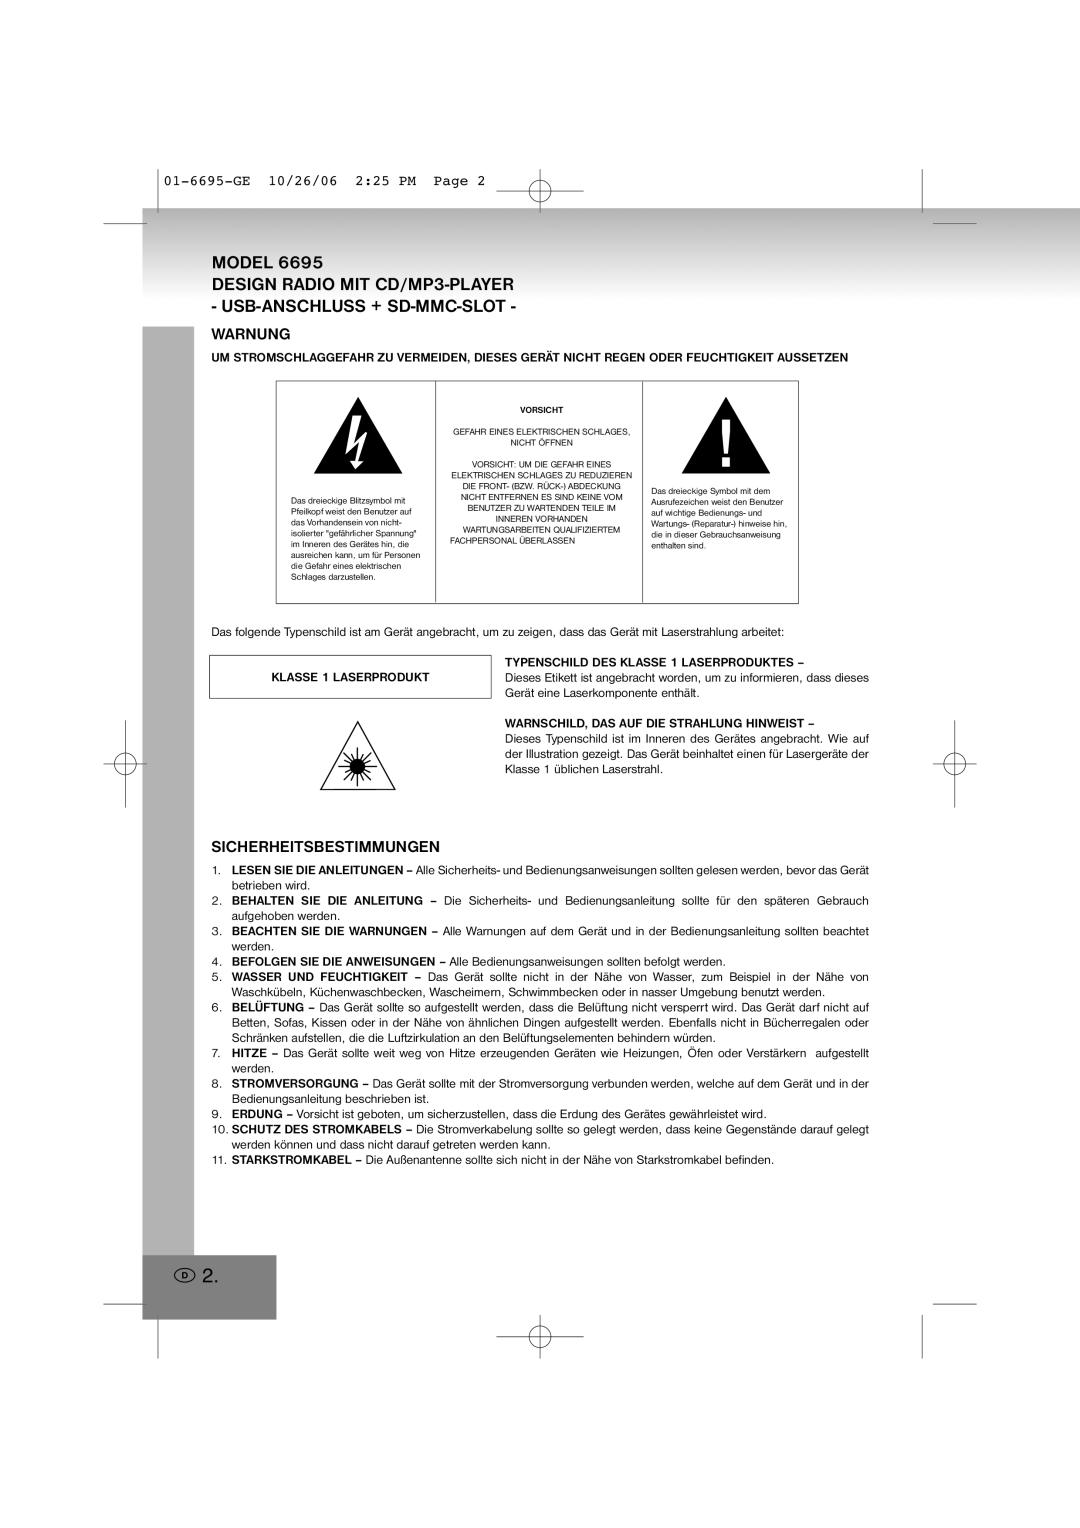 Elta manual Model, Warnung, Sicherheitsbestimmungen, 01-6695-GE10/26/06 2 25 PM Page 